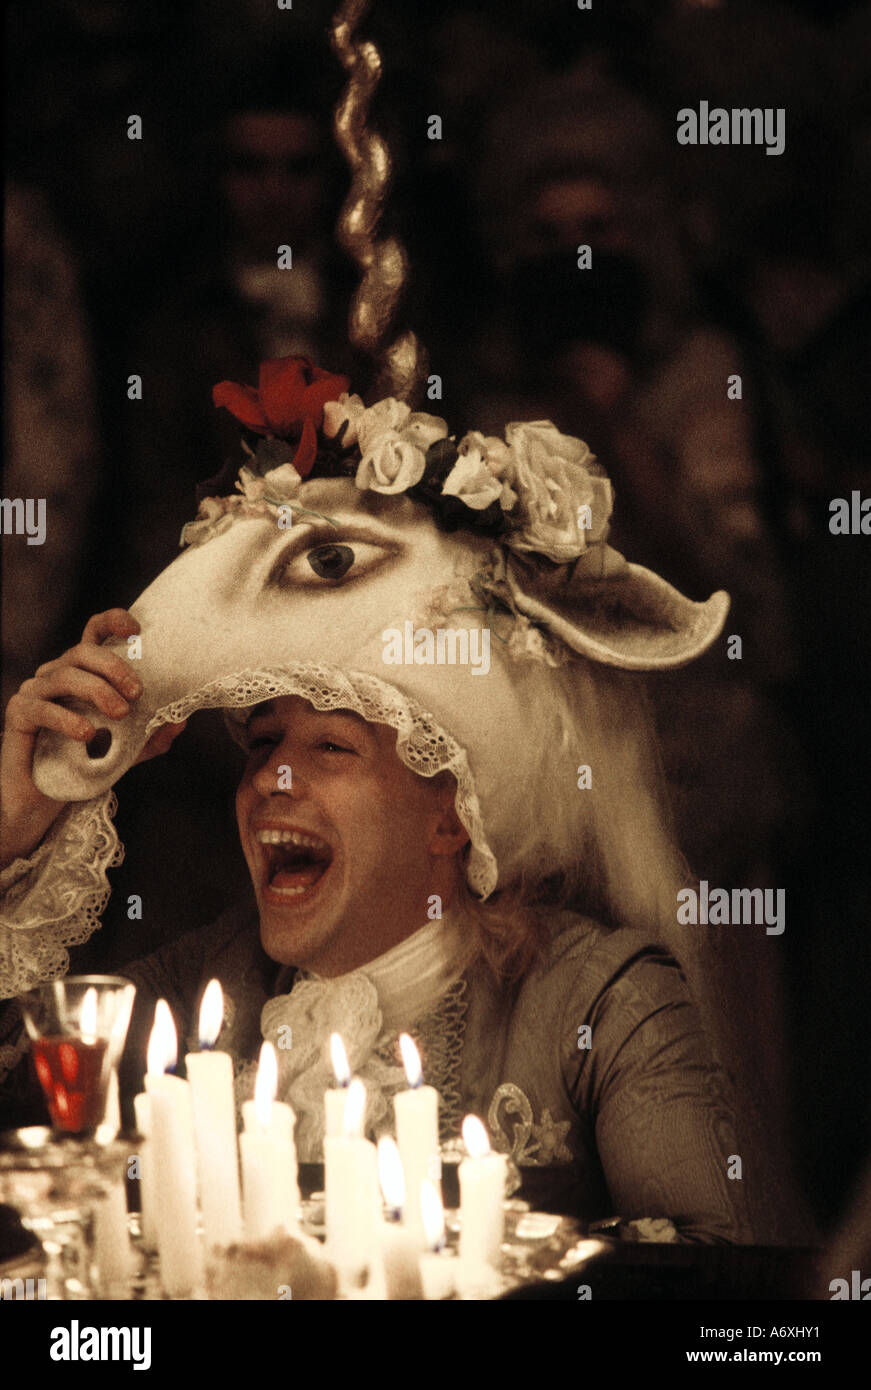 AMADEUS 1984 Saul Zaentz film with Tom Hulce as Mozart Stock Photo